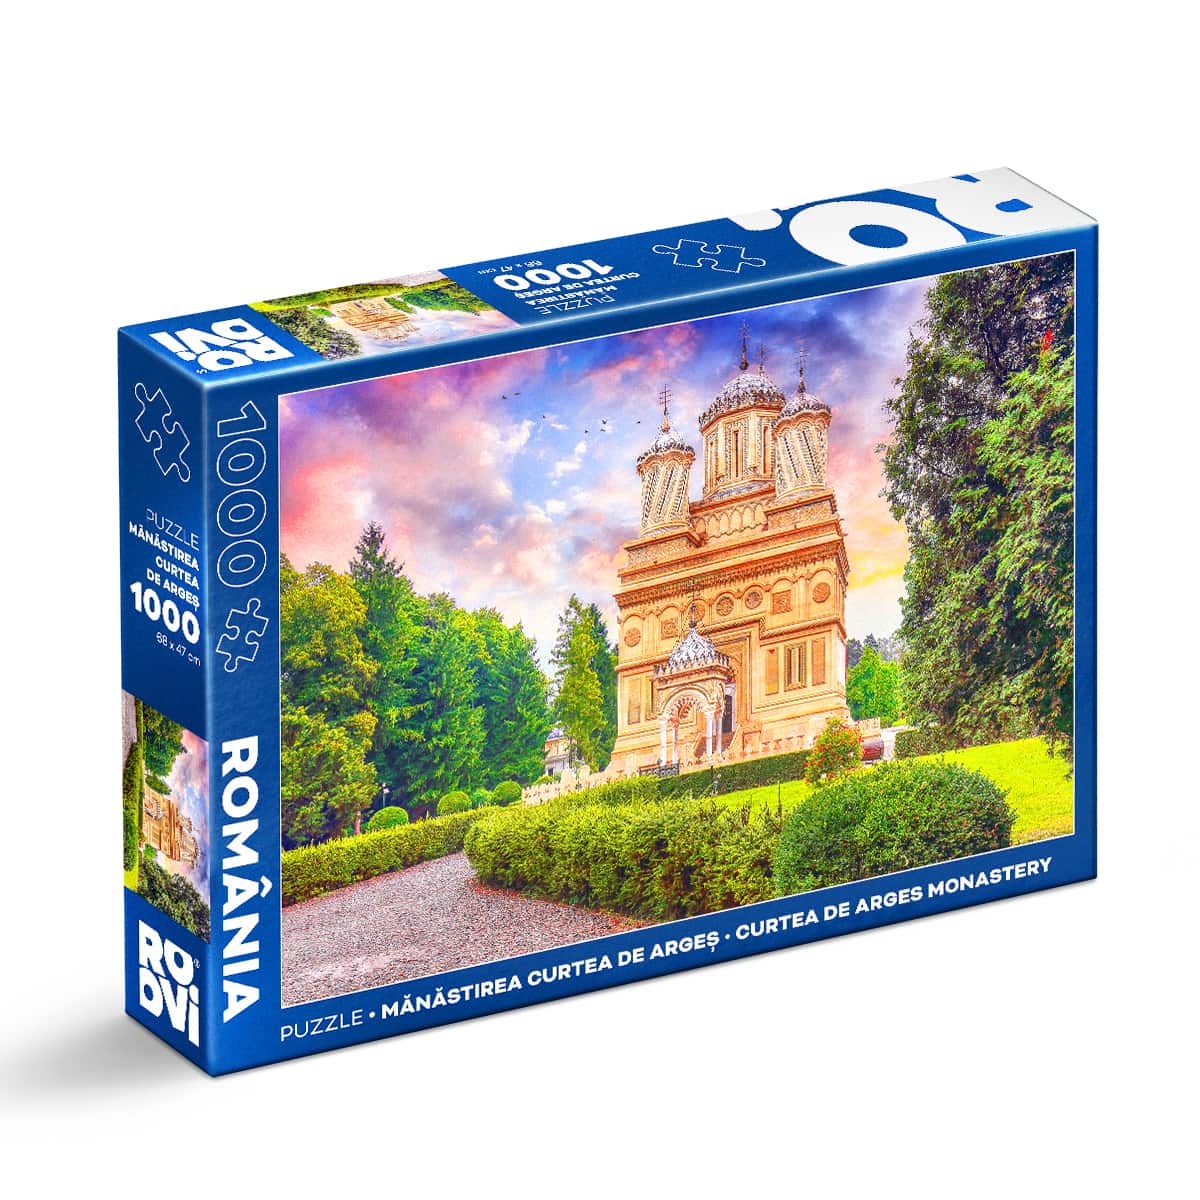 Puzzle Mănăstirea Curtea de Argeș – Puzzle adulți 1000 piese – Imagini din România Puzzle Adulti 1000